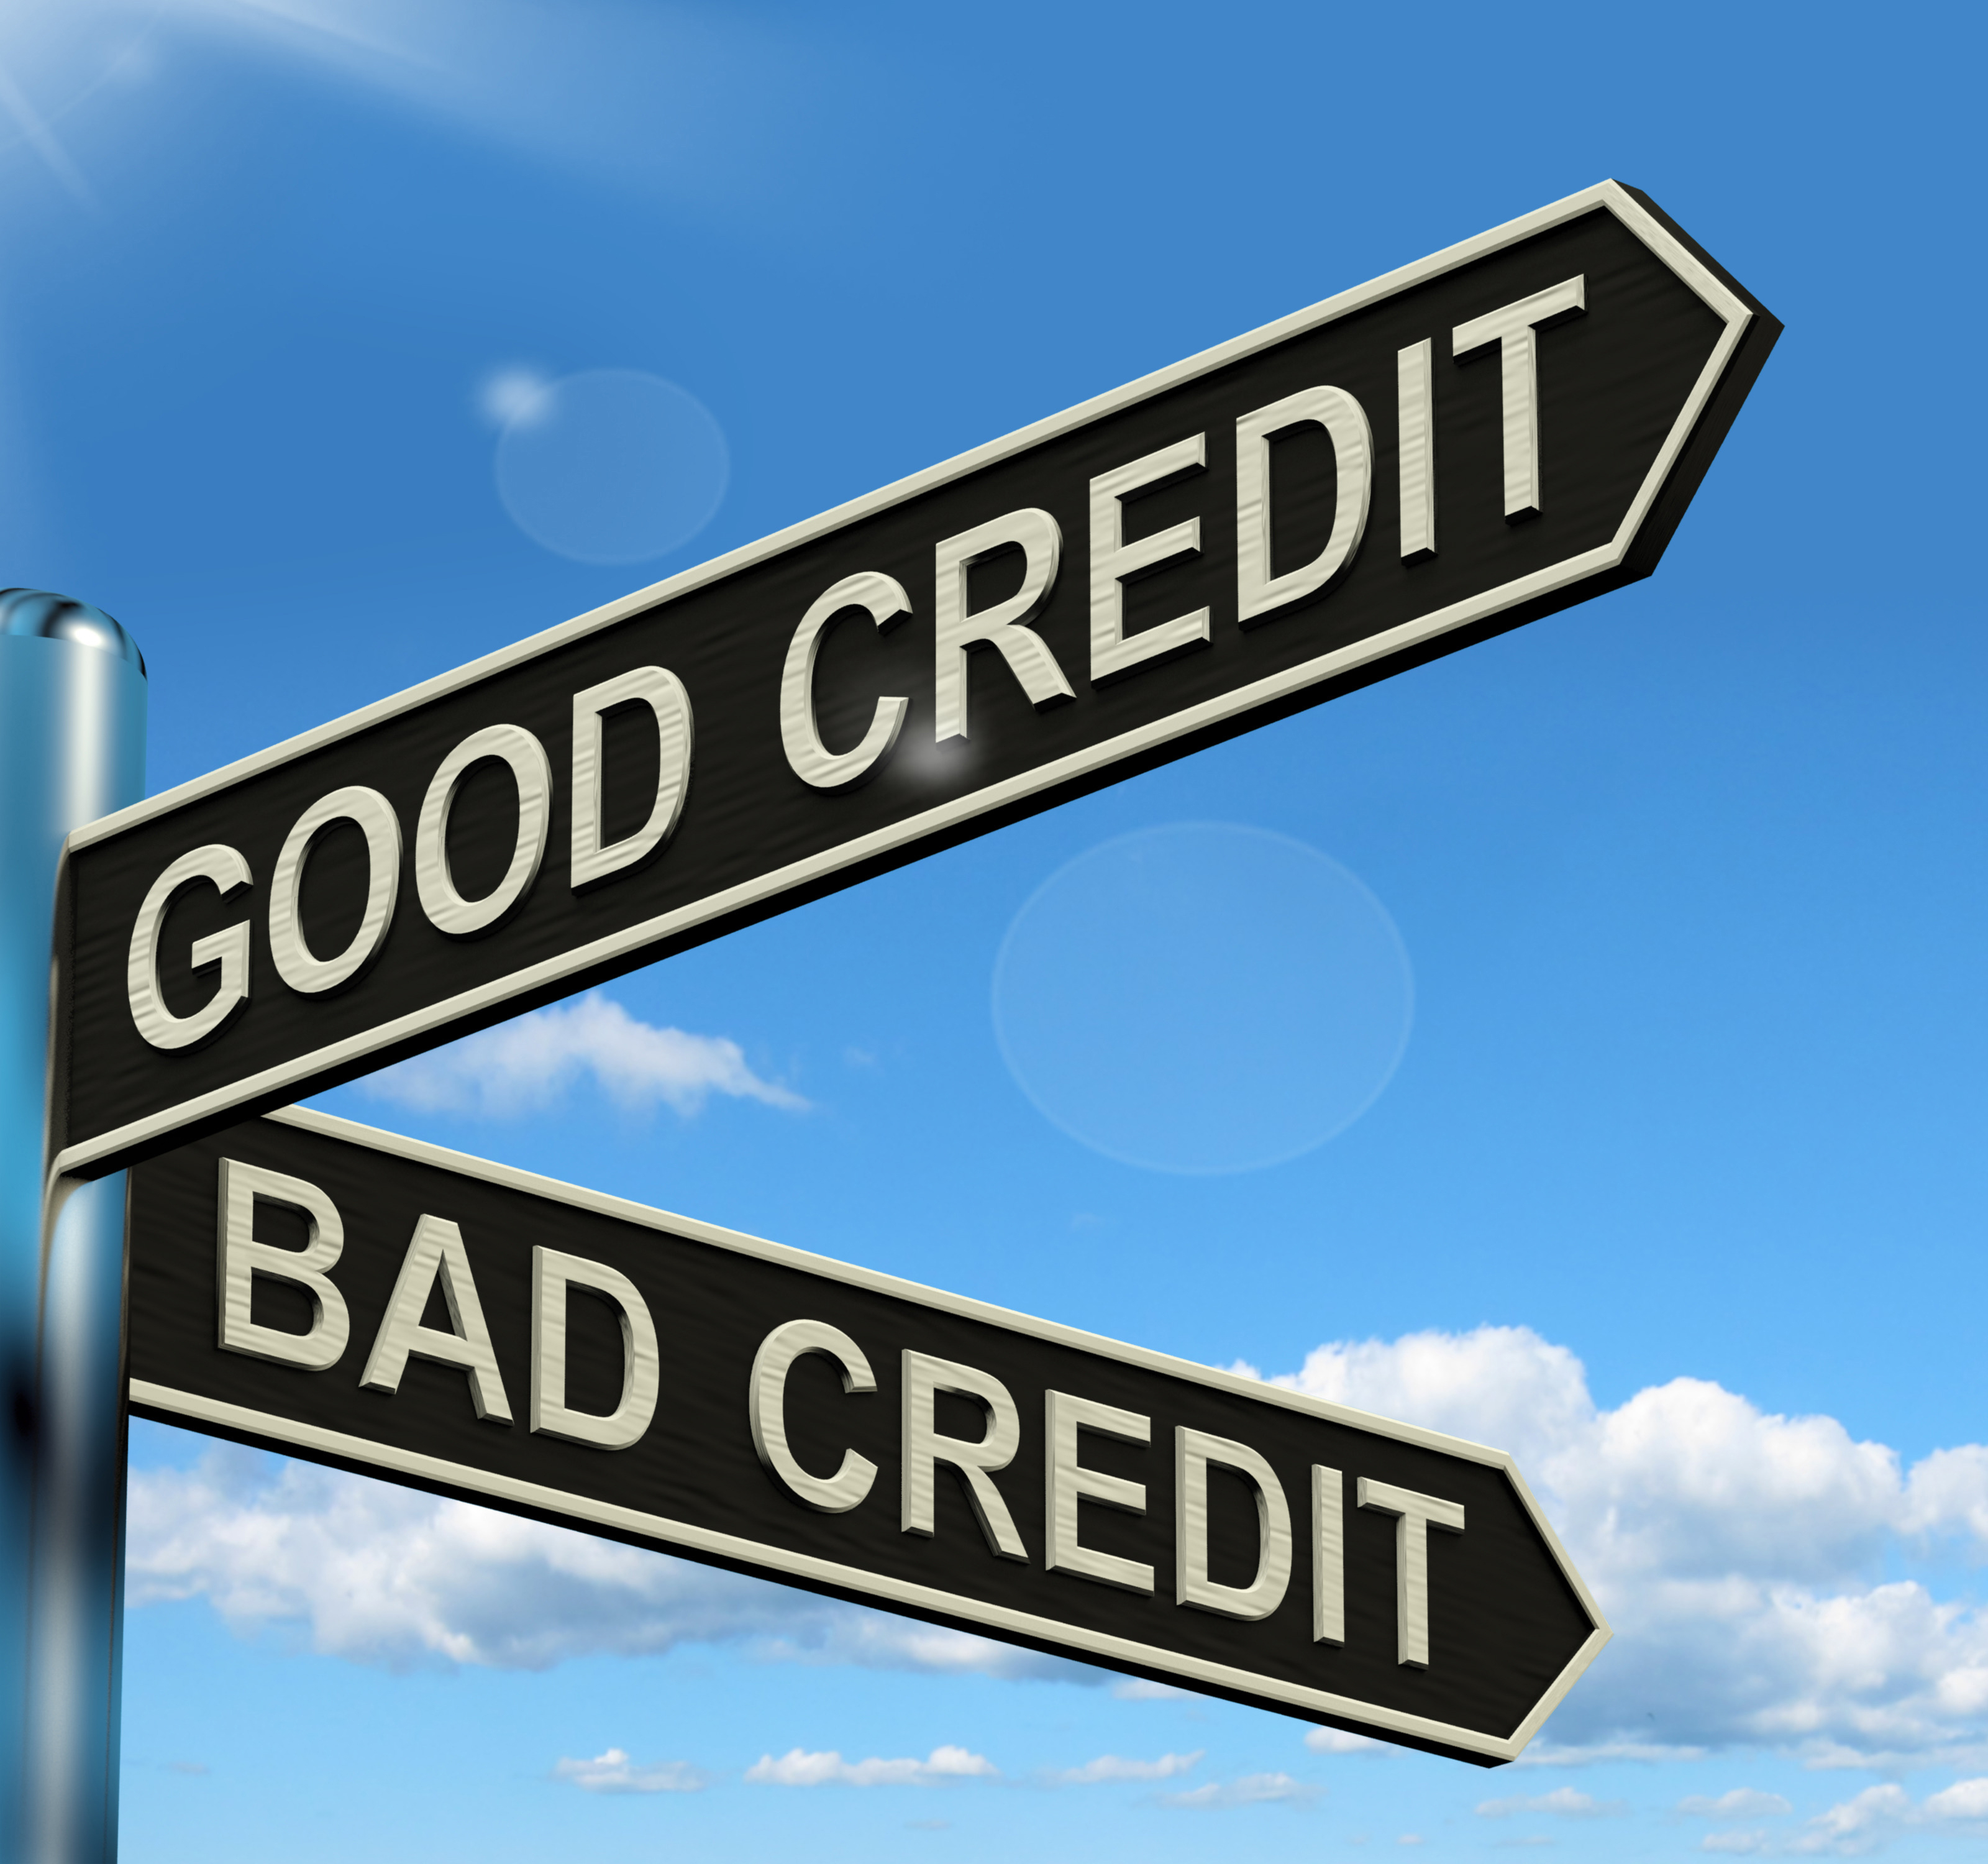 Good Bad Credit Signpost Shows Customer Financial Rating